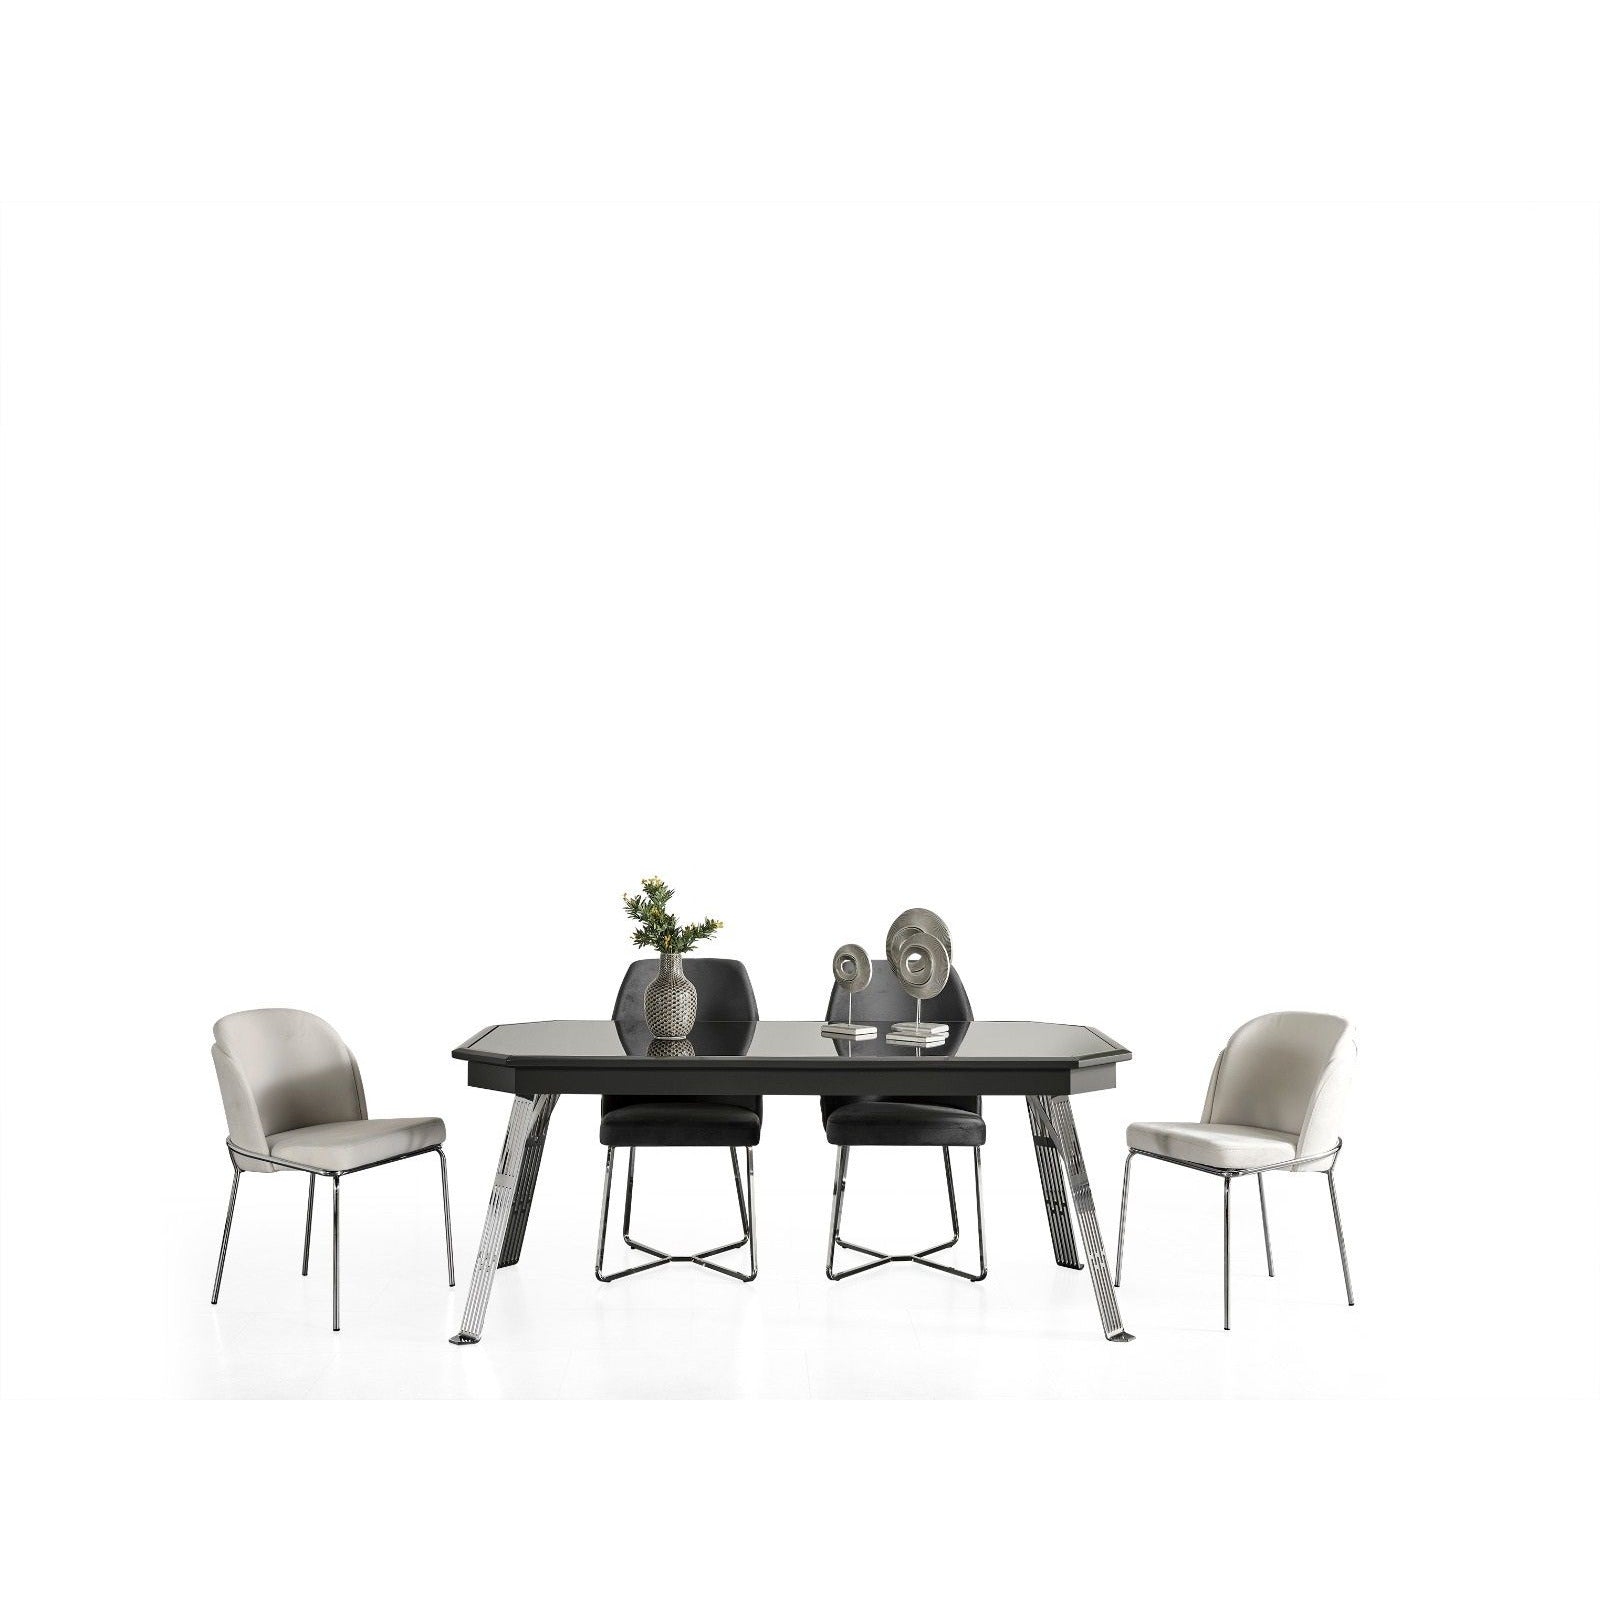 Madrid Matbord - LINE Furniture Group